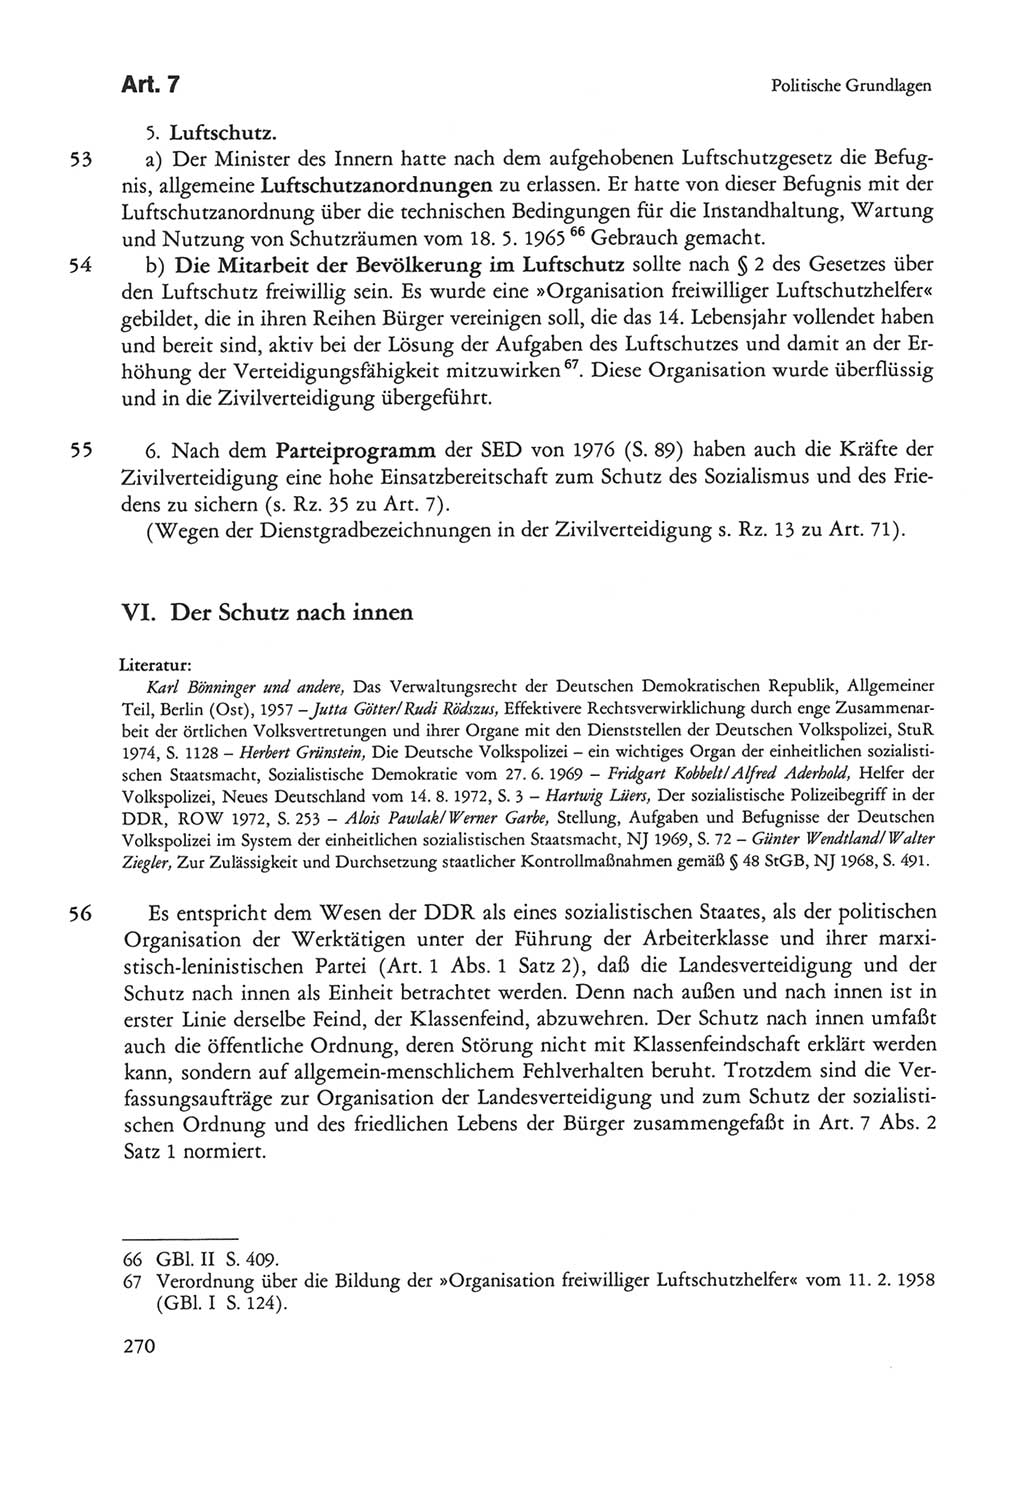 Die sozialistische Verfassung der Deutschen Demokratischen Republik (DDR), Kommentar mit einem Nachtrag 1997, Seite 270 (Soz. Verf. DDR Komm. Nachtr. 1997, S. 270)